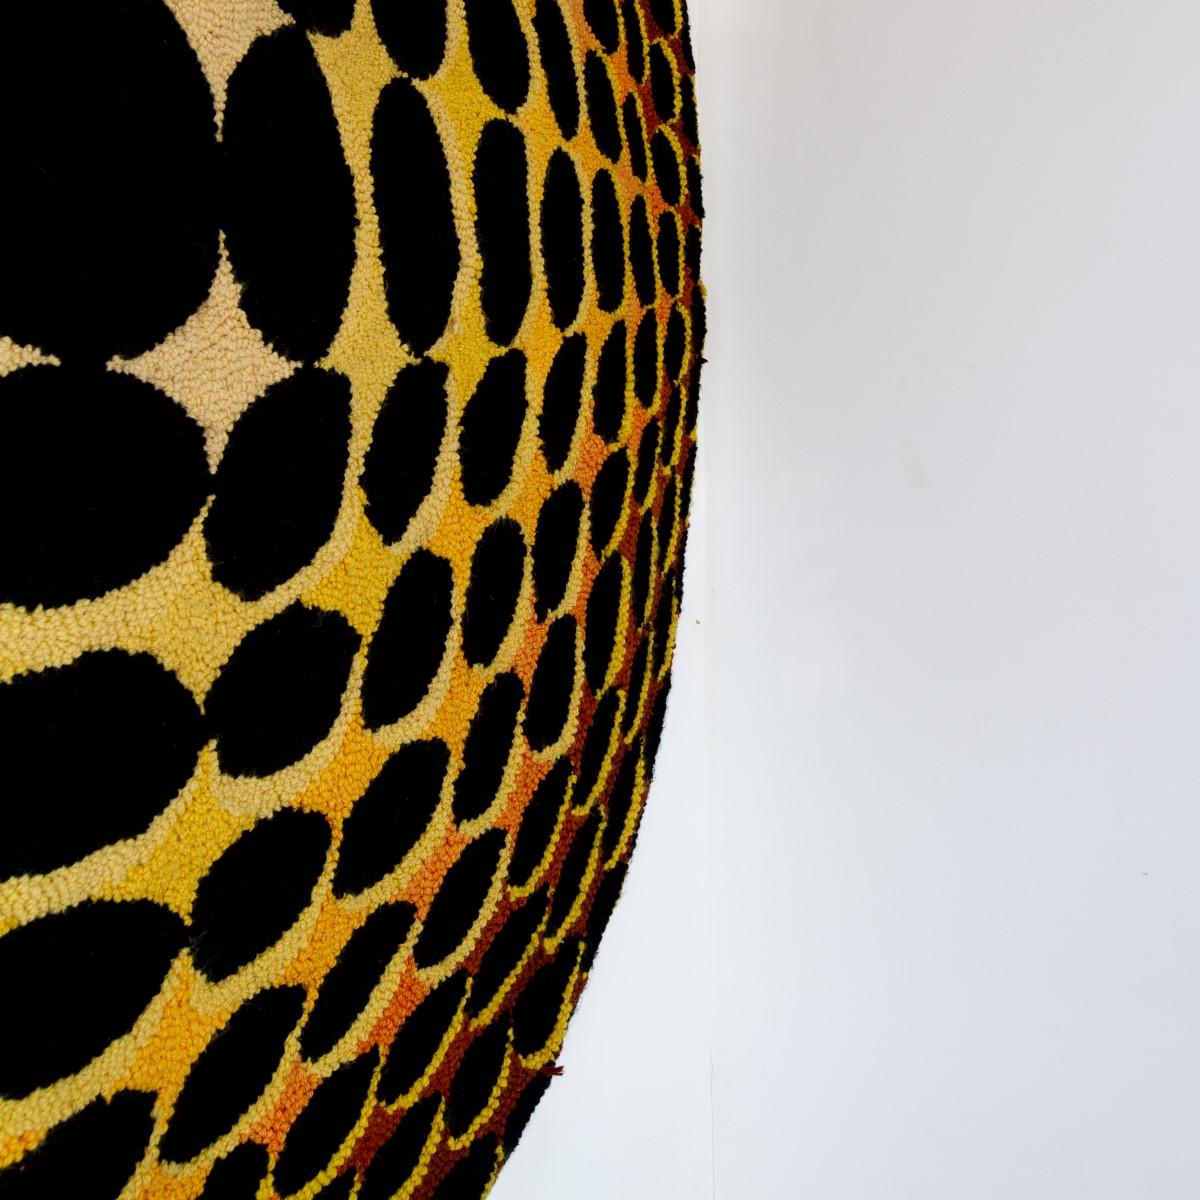 Fabric Huge Optical Art Woven Wall Sculpture Panel/Rug 1970s